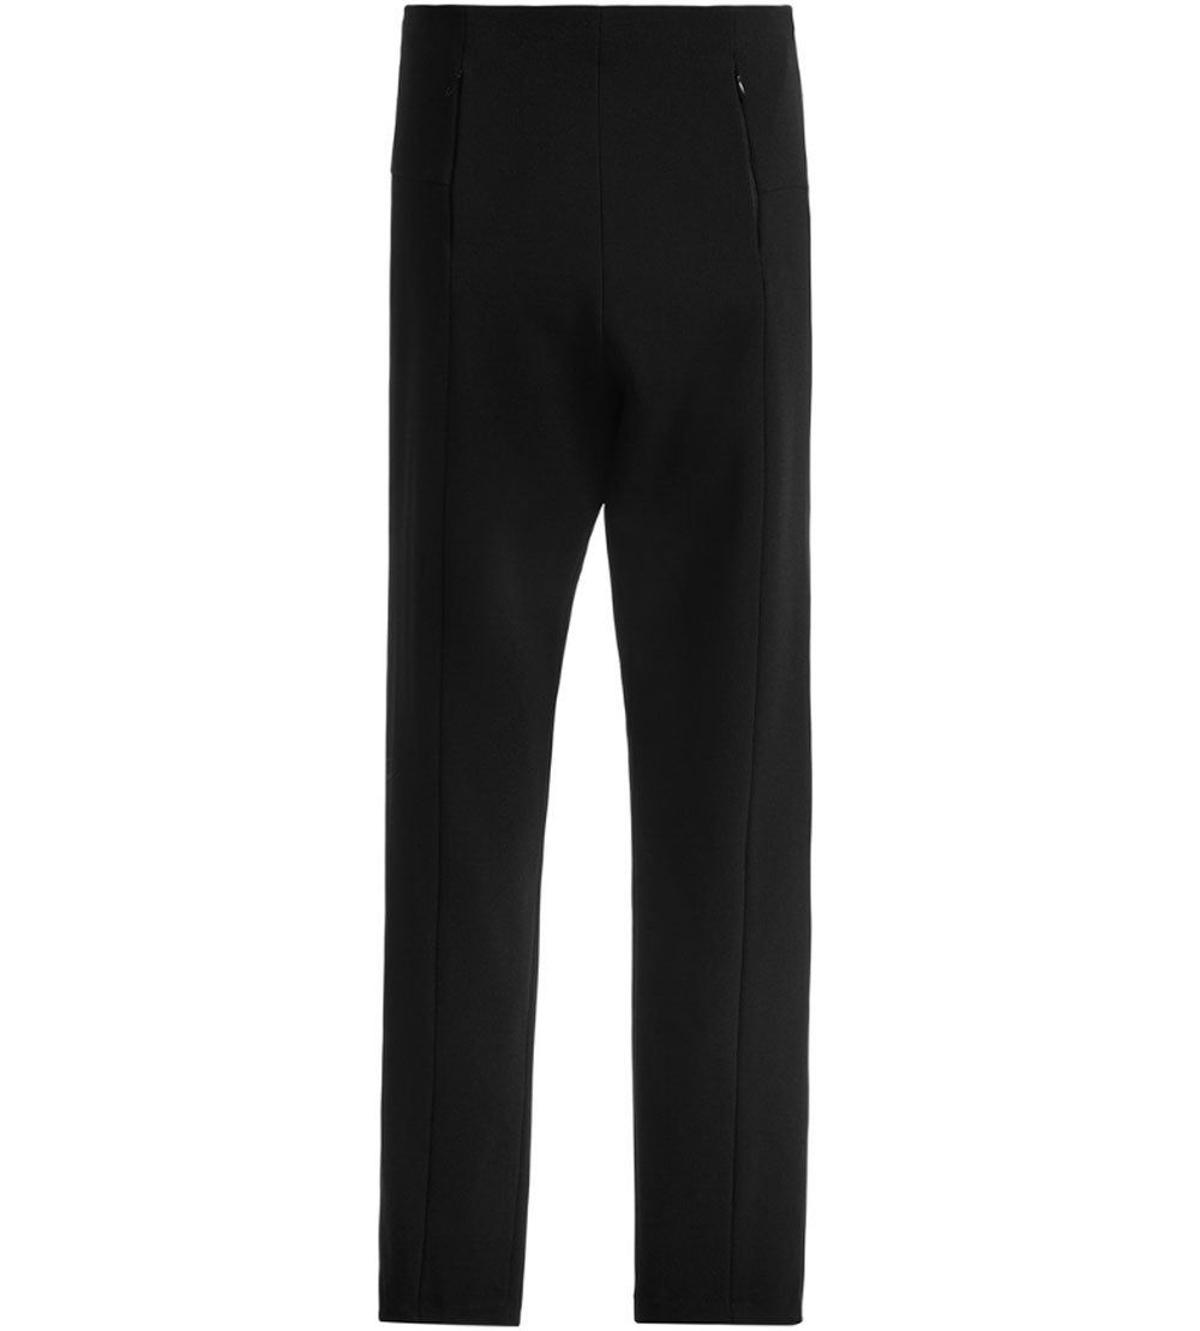 Pantalón negro con aberturas. (Precio: 81 euros)